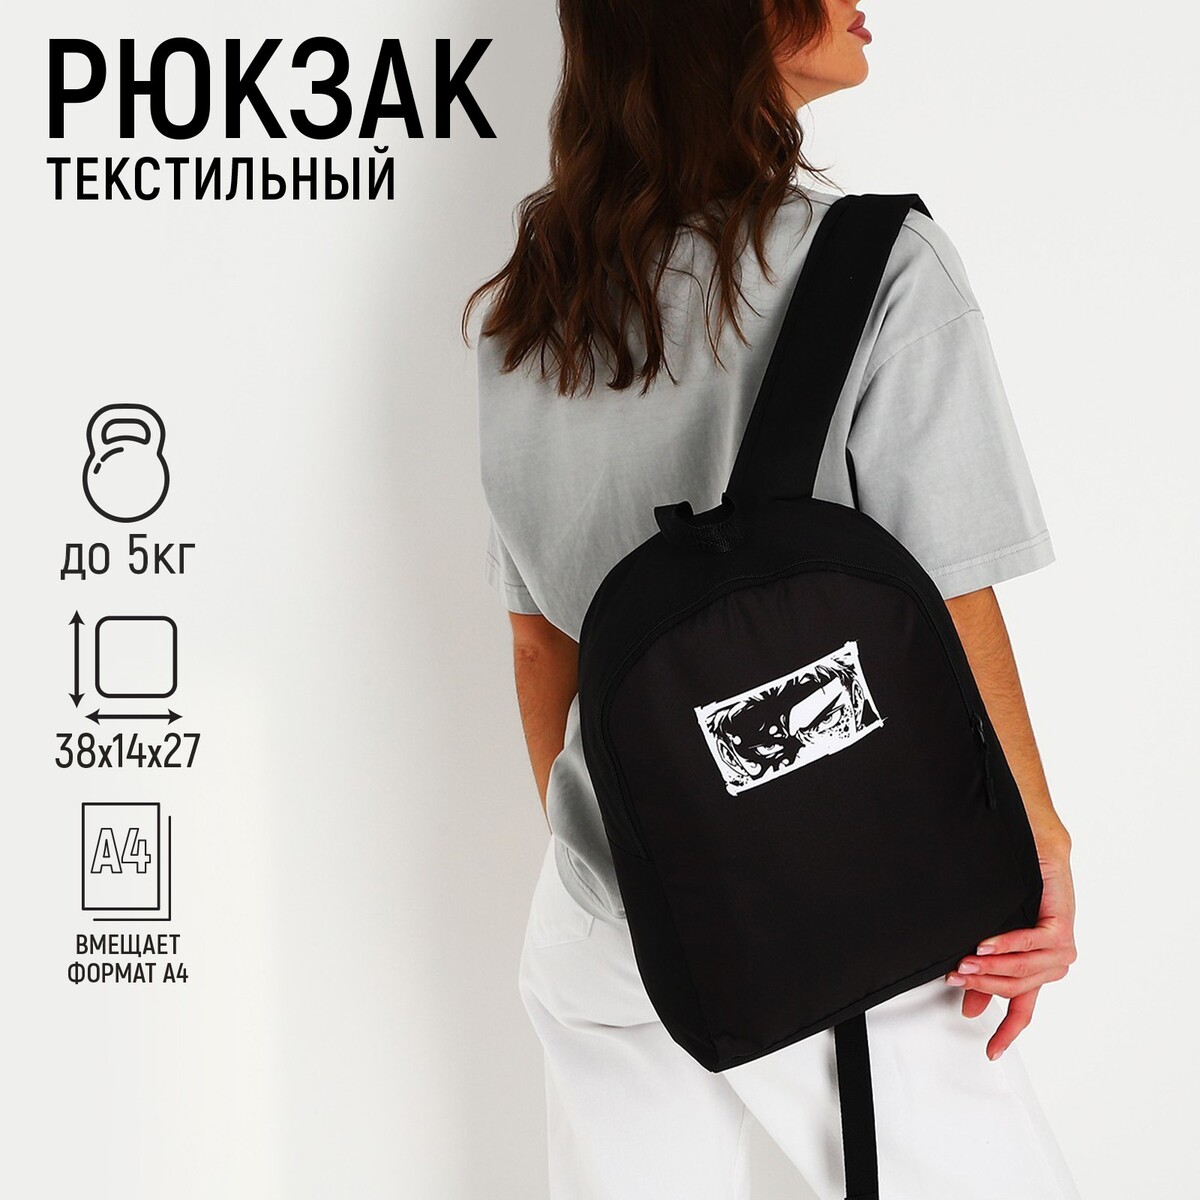 Рюкзак текстильный аниме, 38х14х27 см, цвет черный рюкзак аниме с тачкой 40 27 12см 1отд